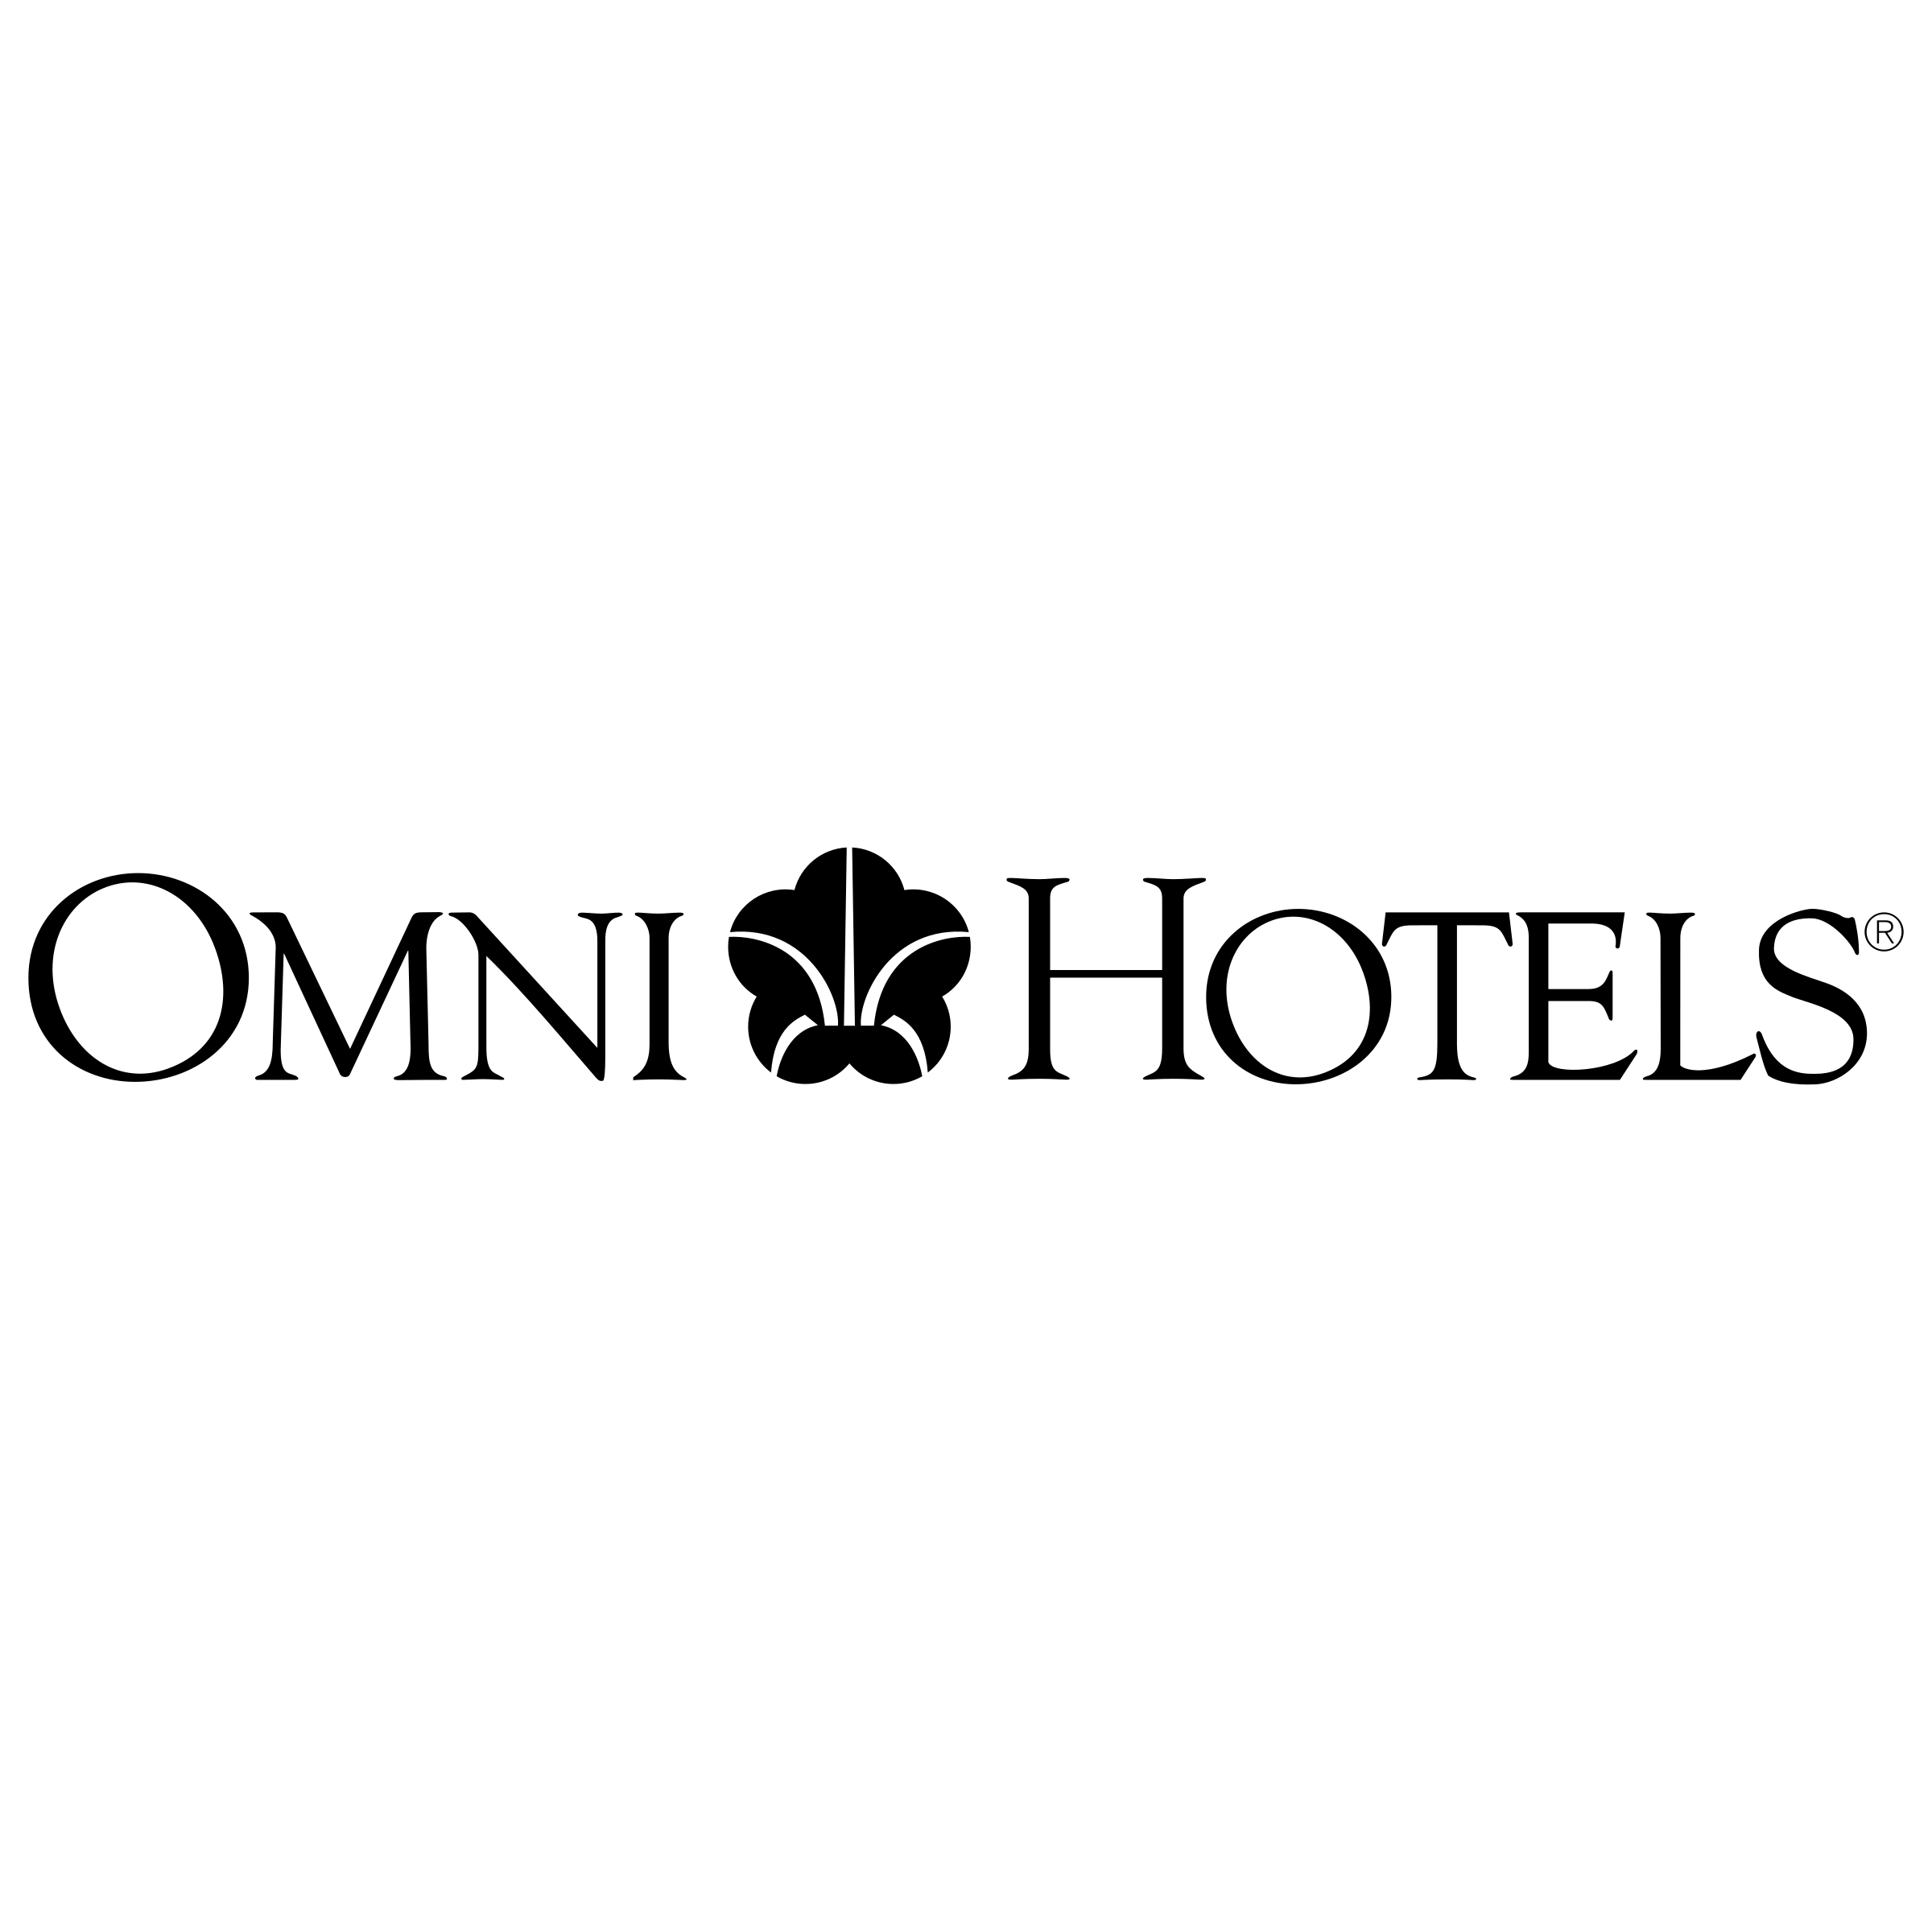 Omni Logo - Omni Hotels Logo PNG Transparent & SVG Vector